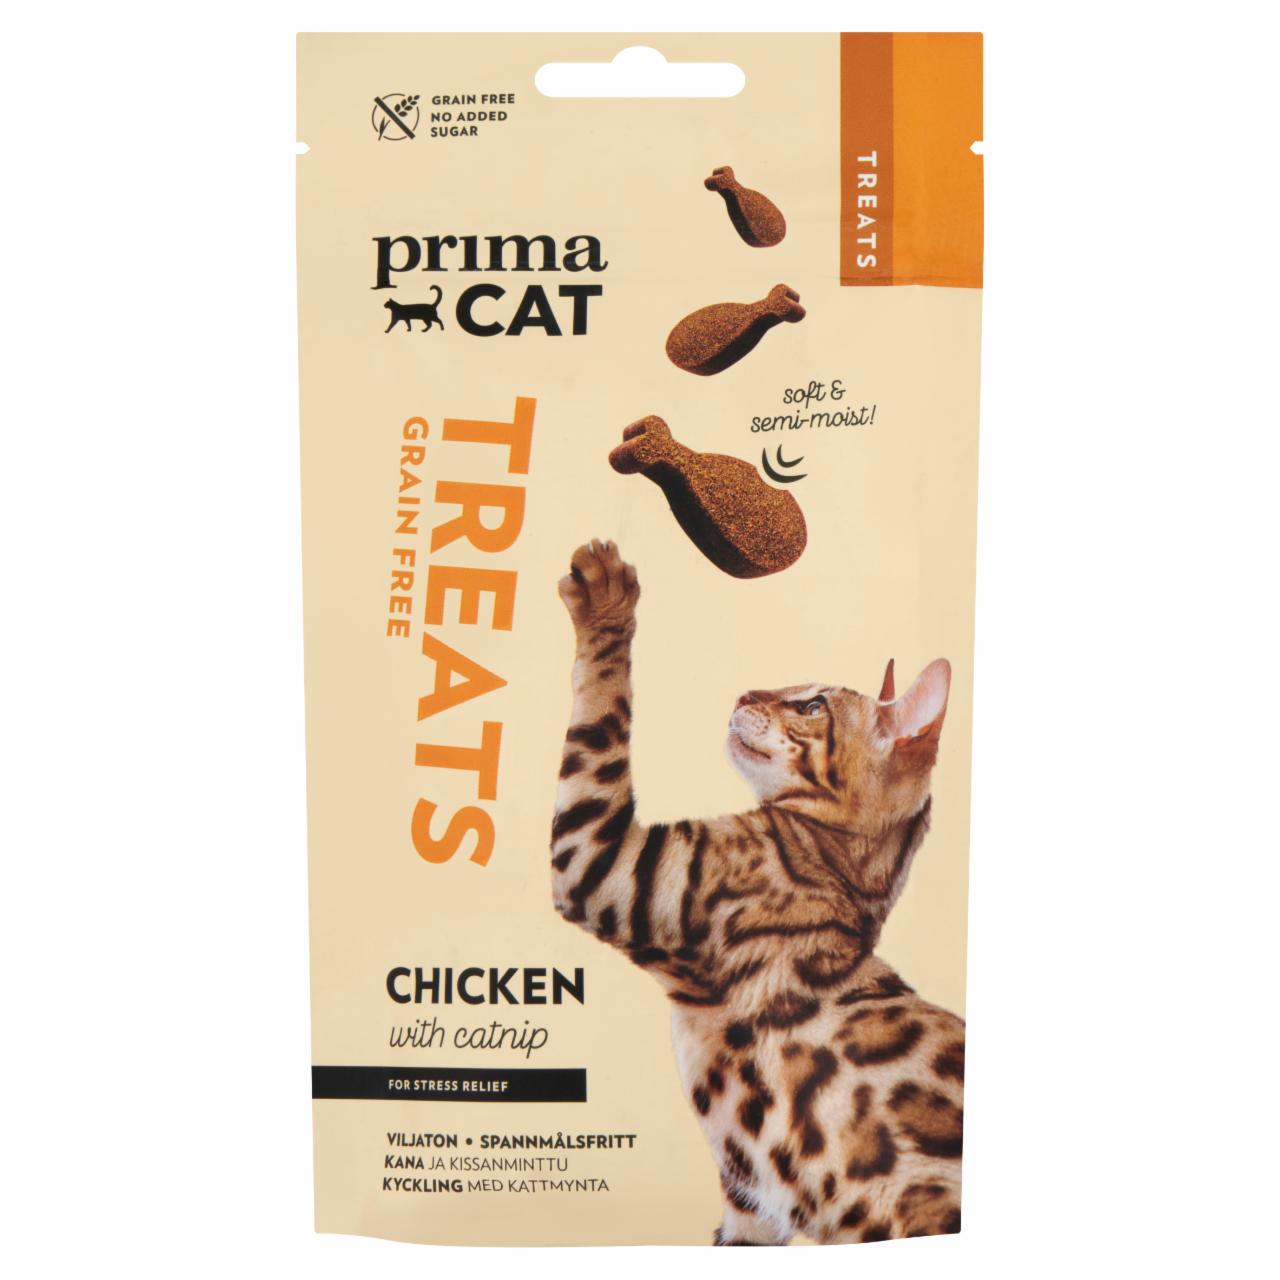 Képek - Prima Cat félnedves, puha macska jutalomfalat macskagyökérrel és csirkével felnőtt macskáknak 50 g